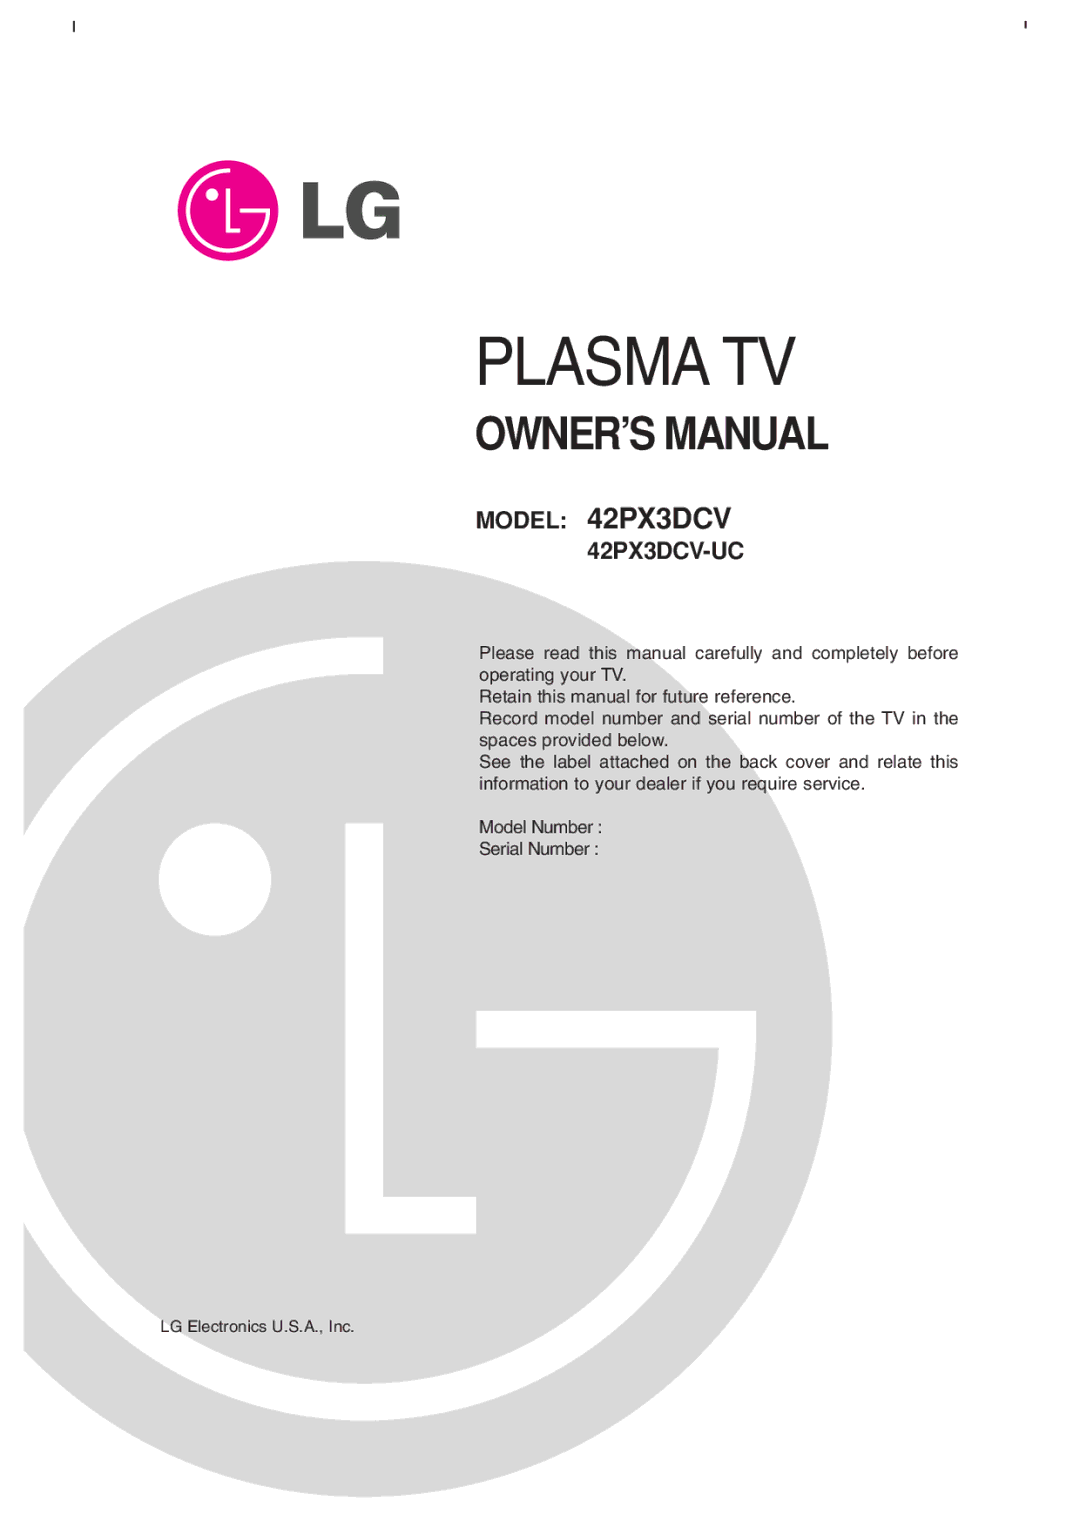 LG Electronics 42PX3DCV-UC owner manual Plasma TV, LG Electronics U.S.A., Inc 